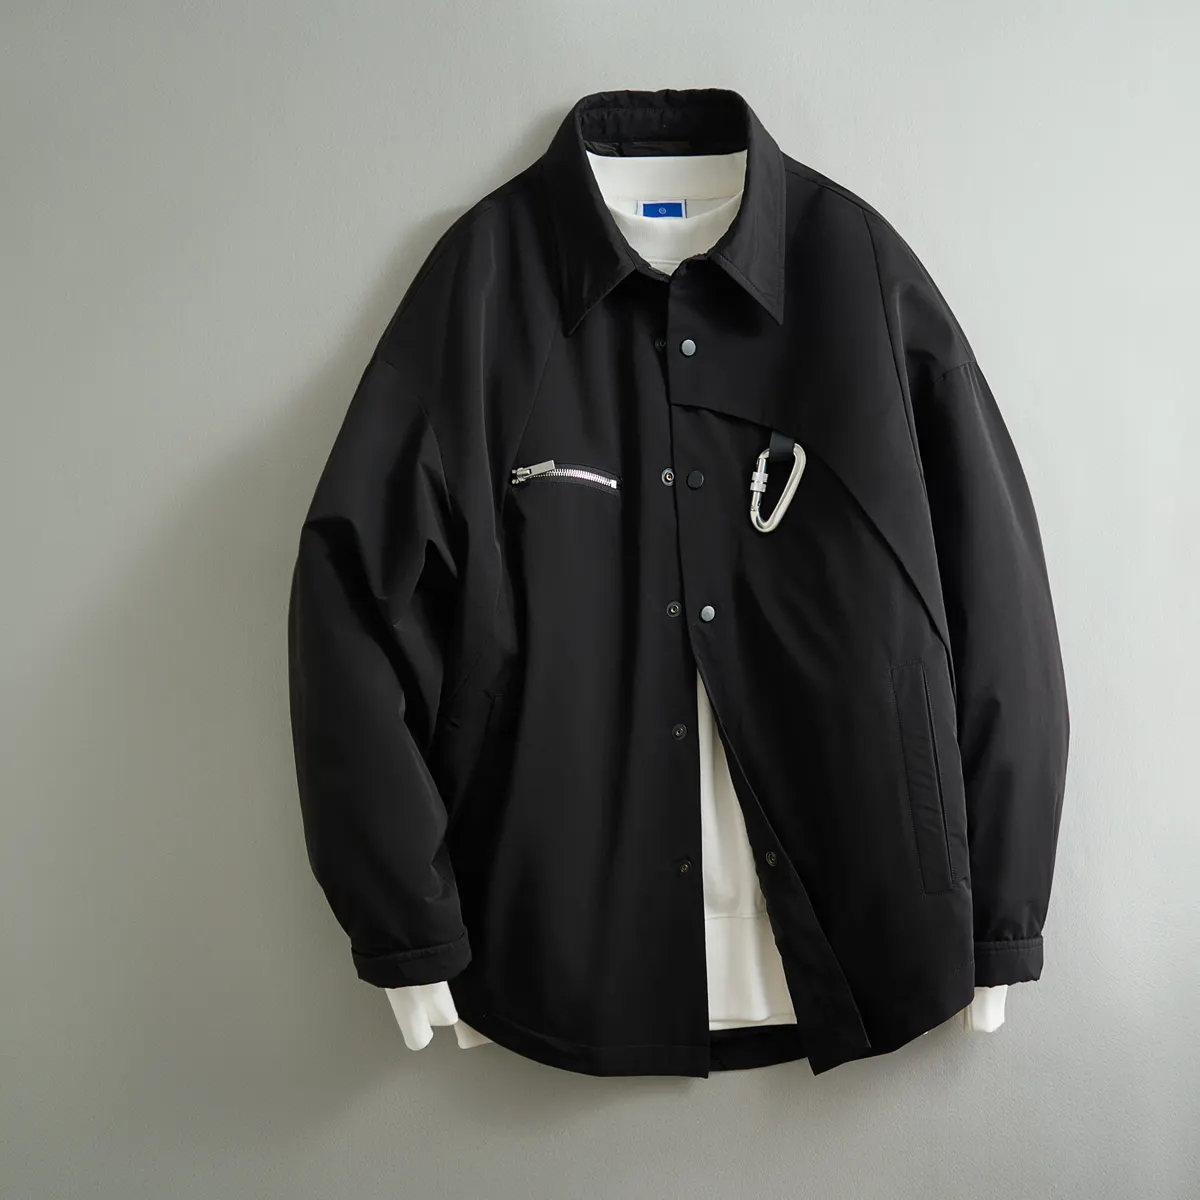 OEM Custom Design leve dos homens acolchoados inverno jaquetas quente impermeável para baixo puffer jaqueta para homens jaqueta bomber